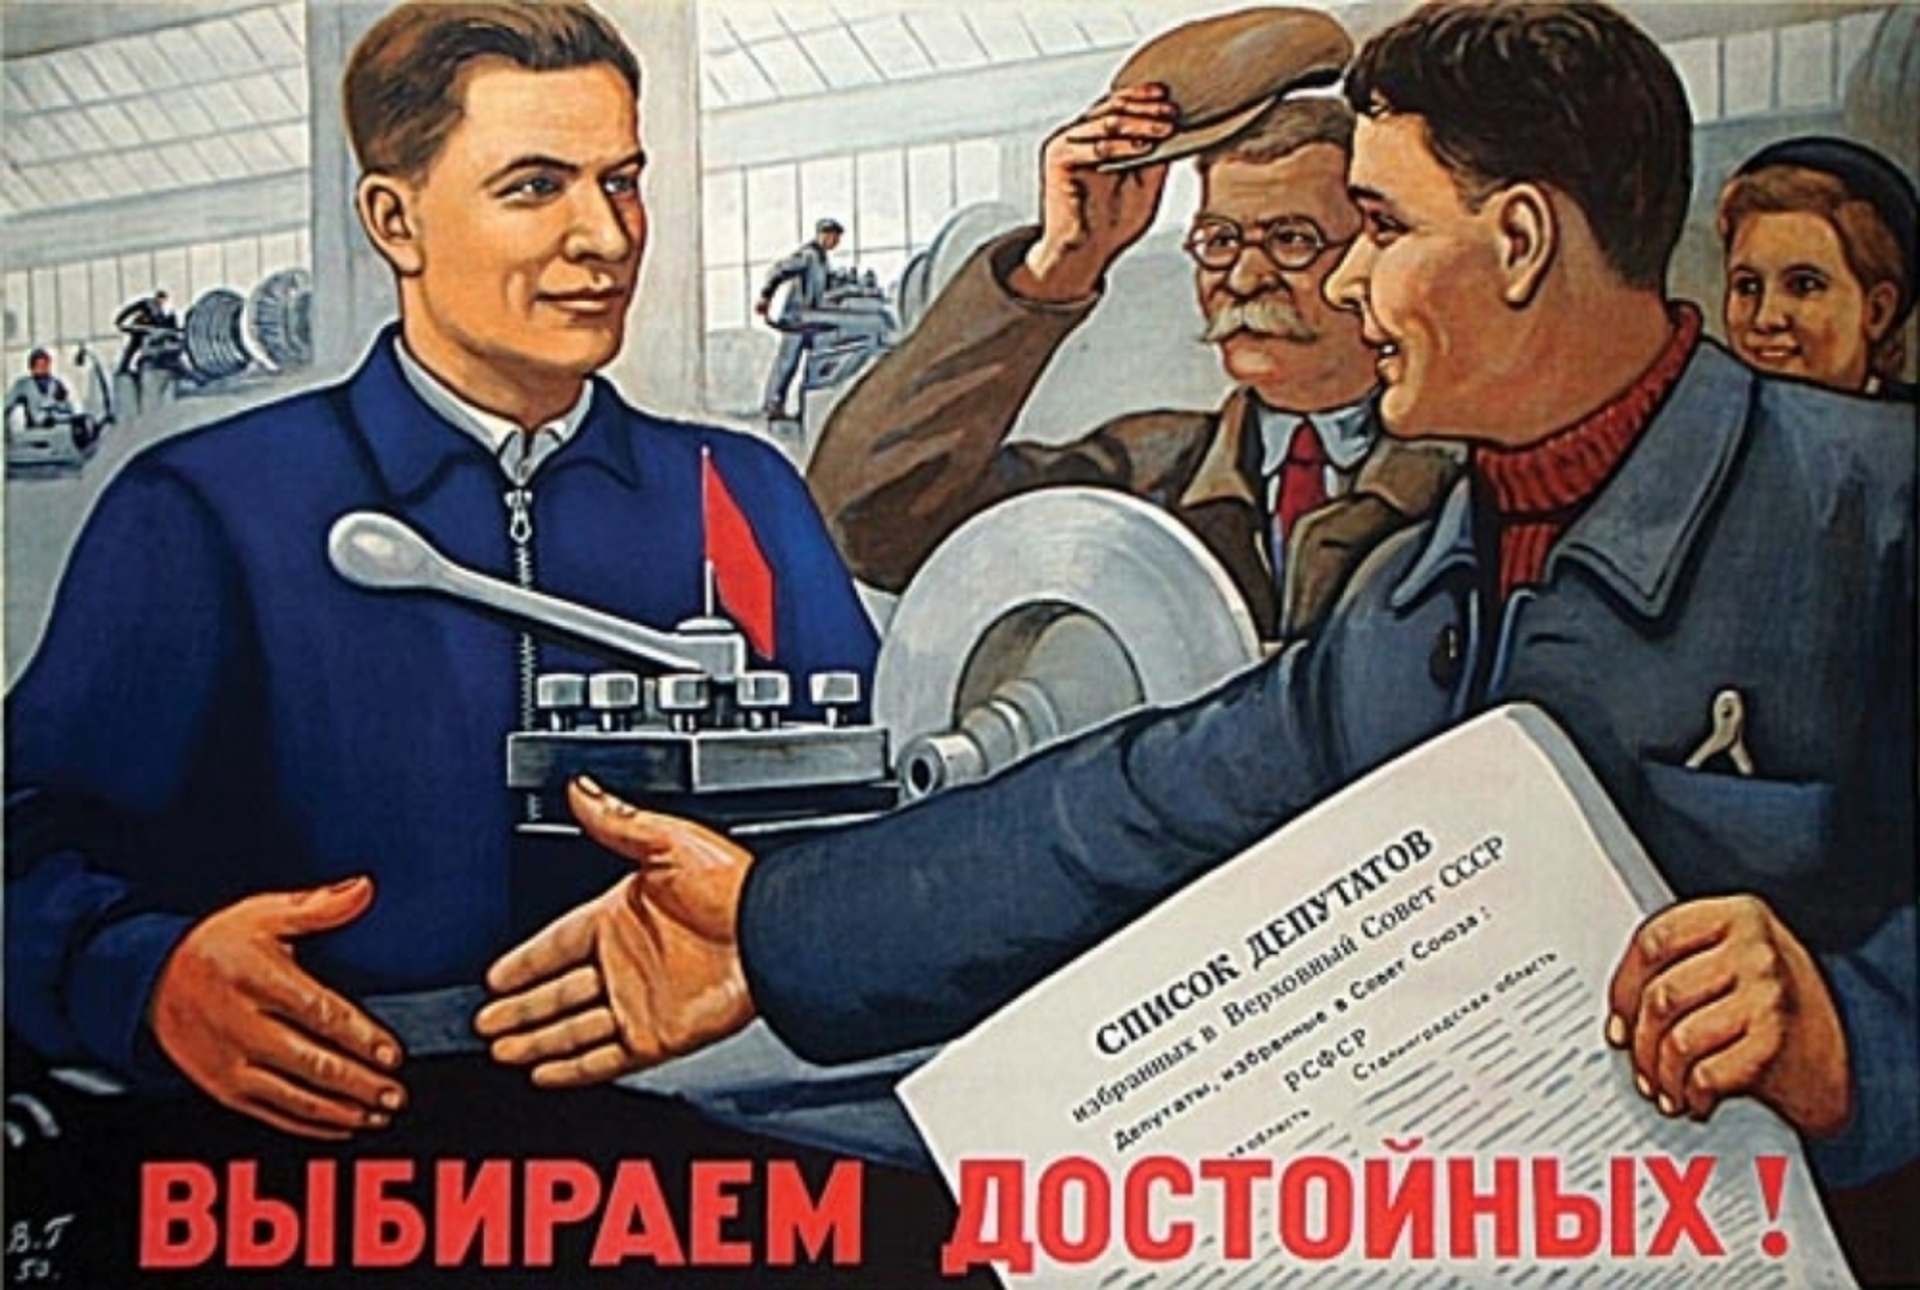 Варианты агитации. Советские плакаты. Плакат депутата. Советские предвыборные плакаты. Плакат выберем достойных.